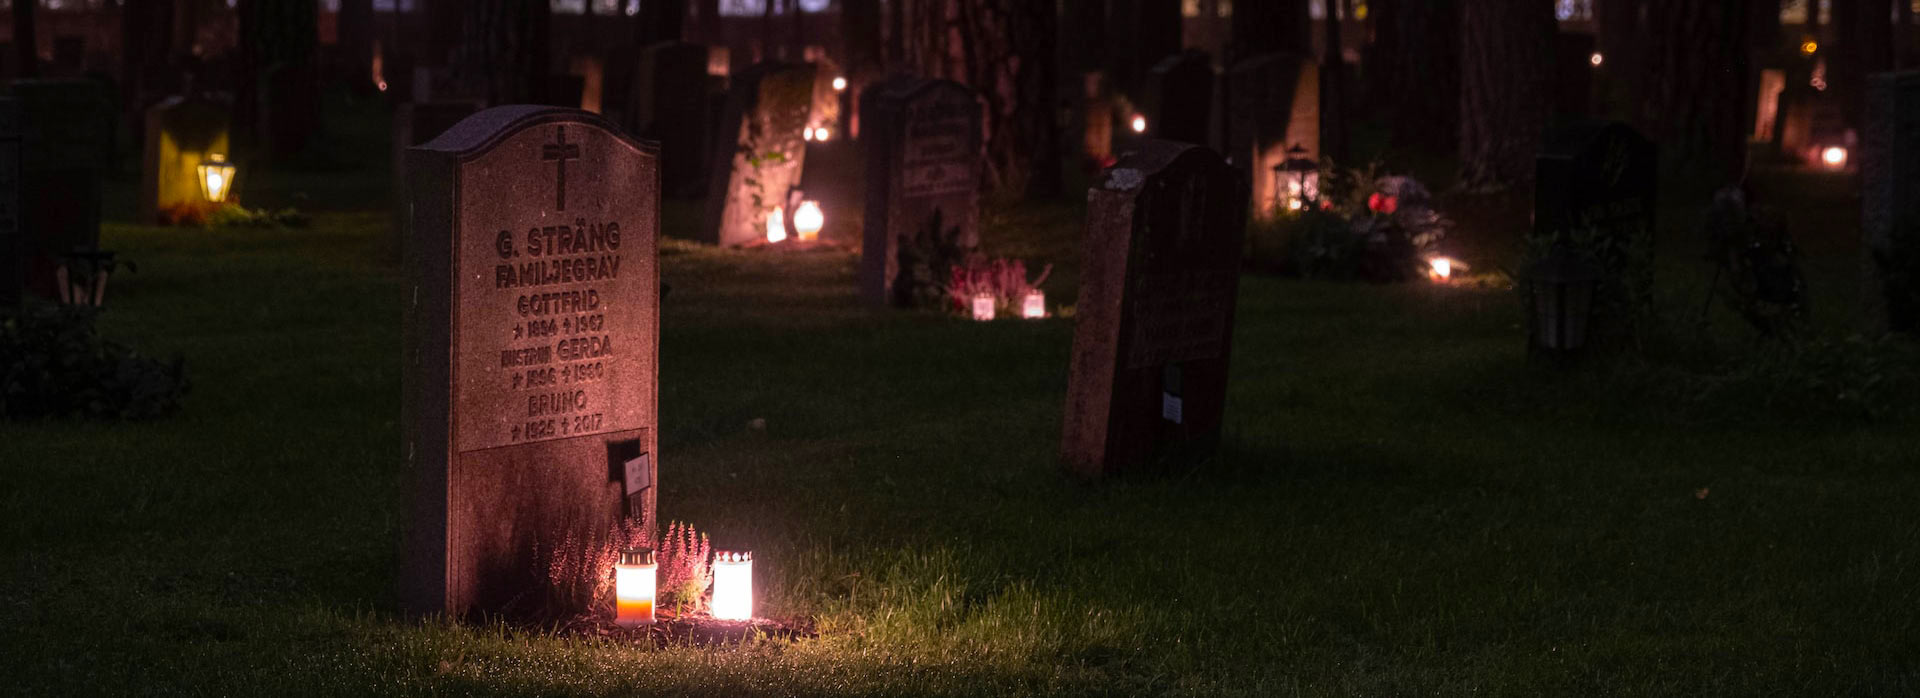 Ночное кладбище, освещенное свечами